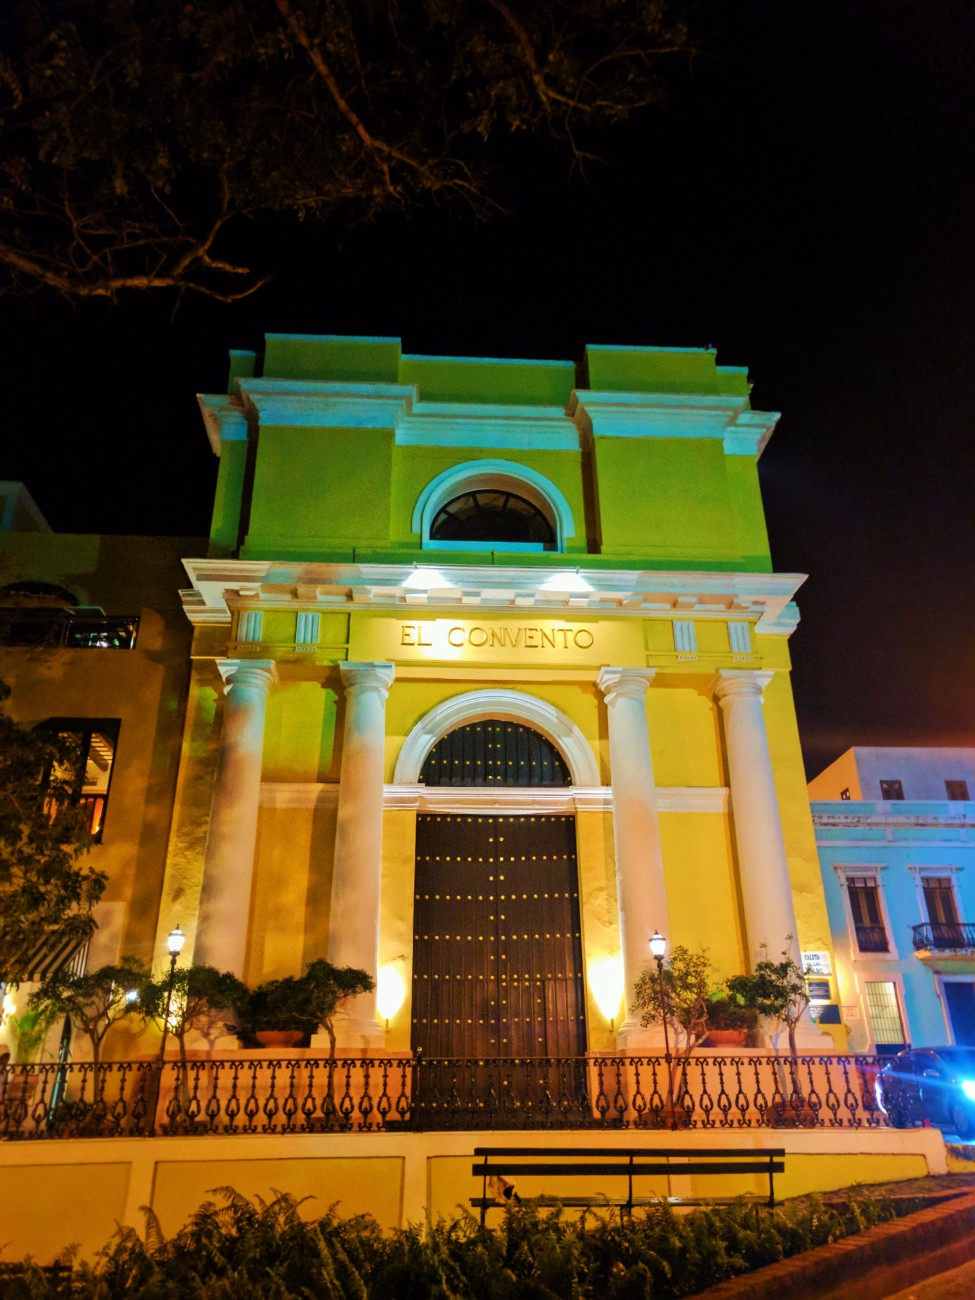 El Convento Hotel in Old San Juan Puerto Rico at night 1